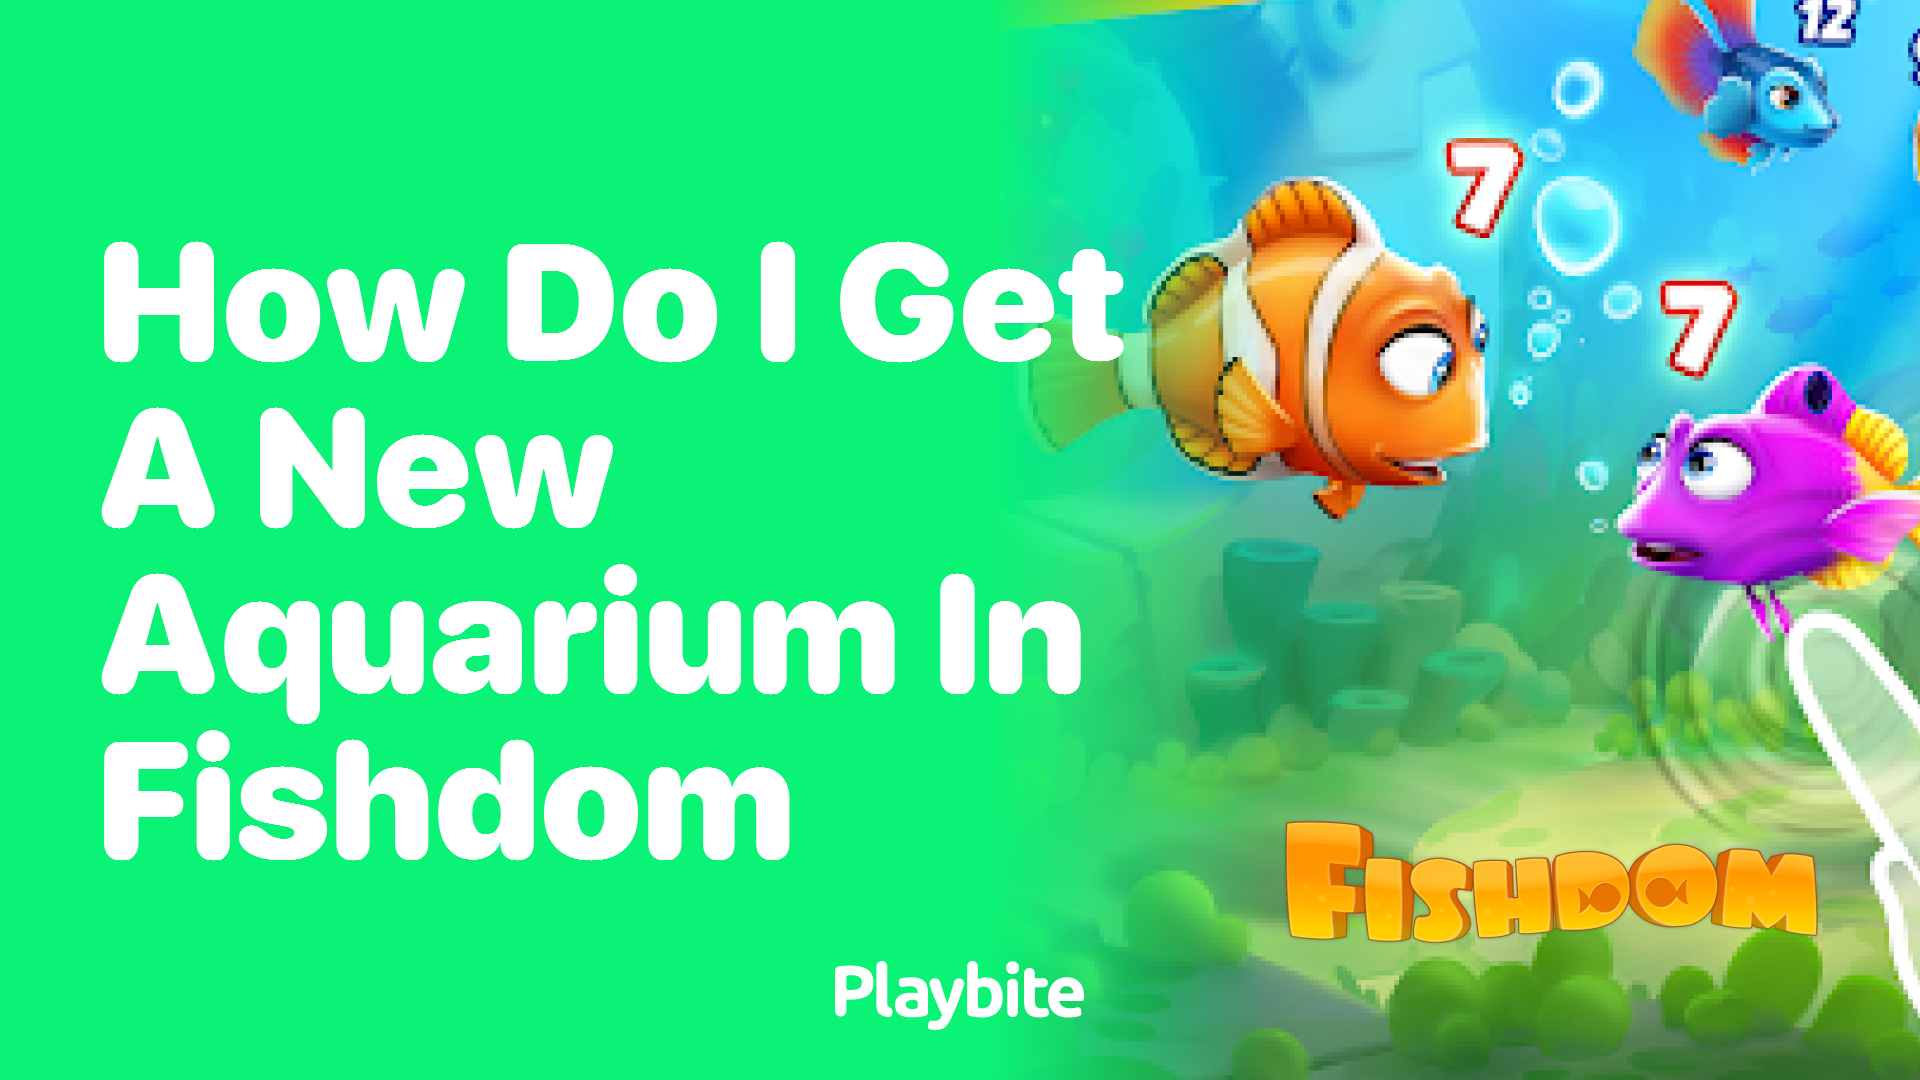 How Do I Get a New Aquarium in Fishdom?